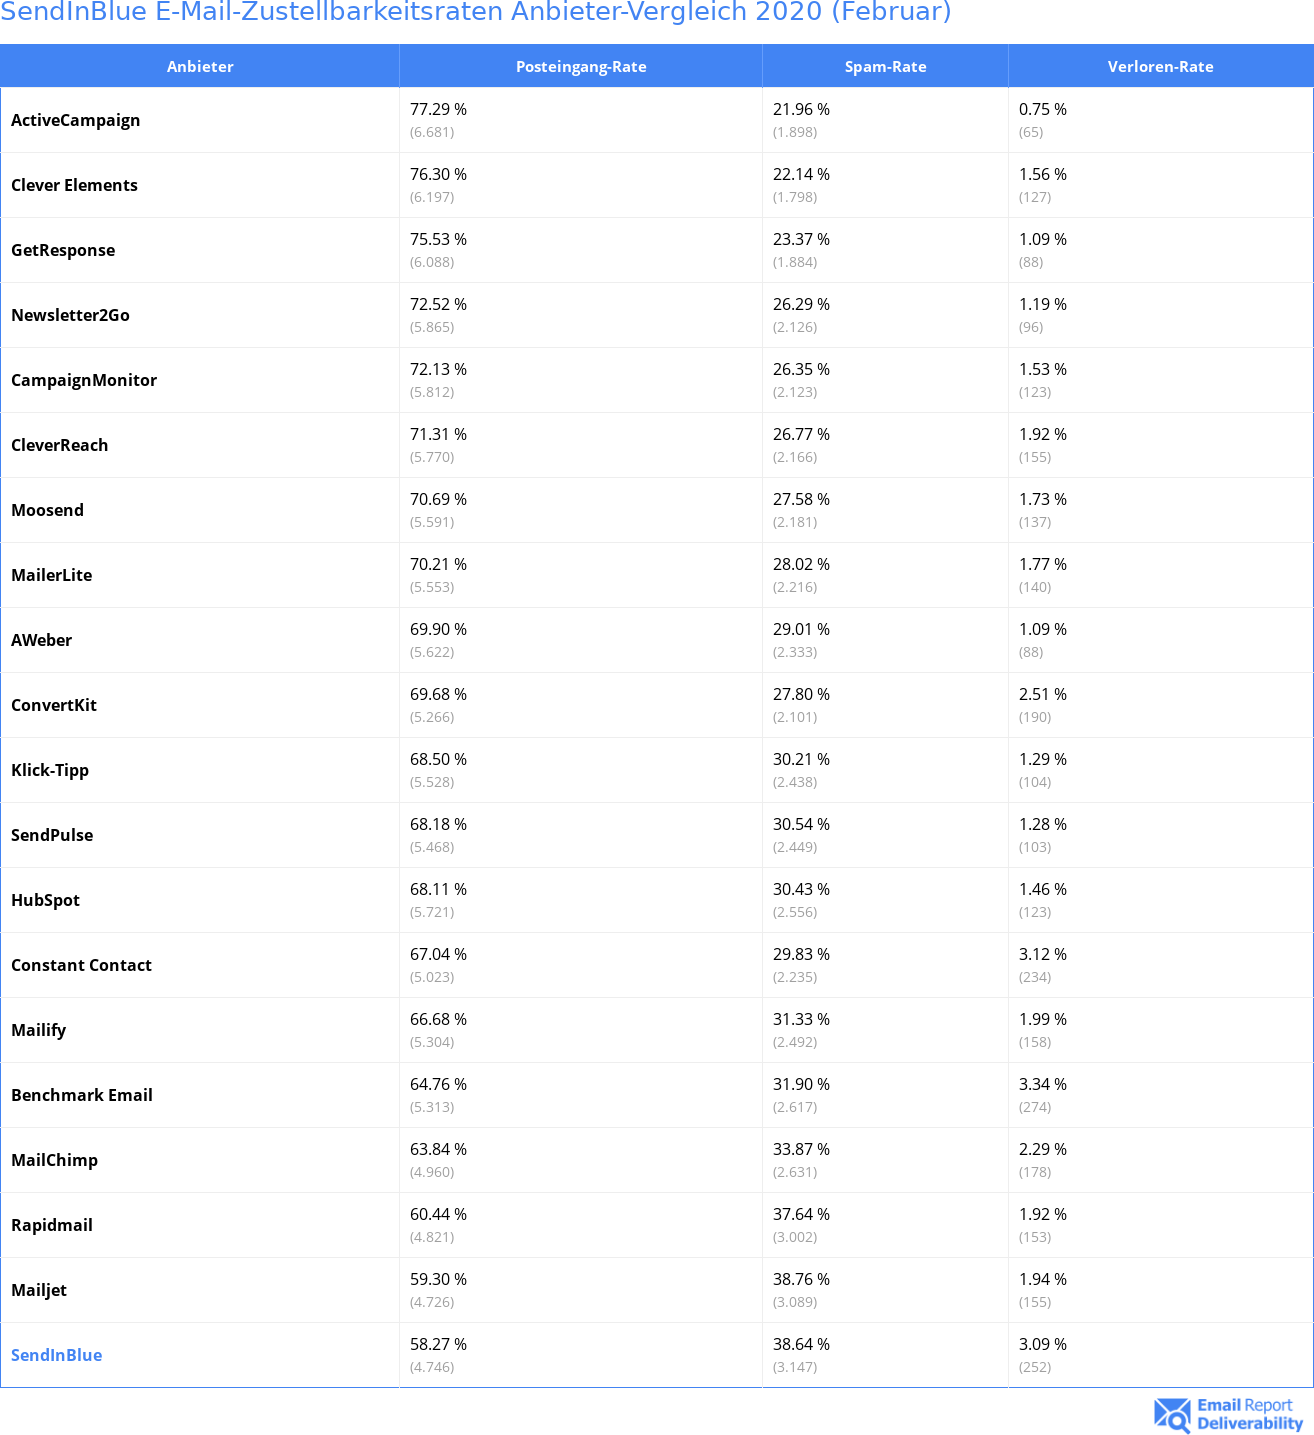 SendInBlue E-Mail-Zustellbarkeitsraten Anbieter-Vergleich 2020 (Februar)